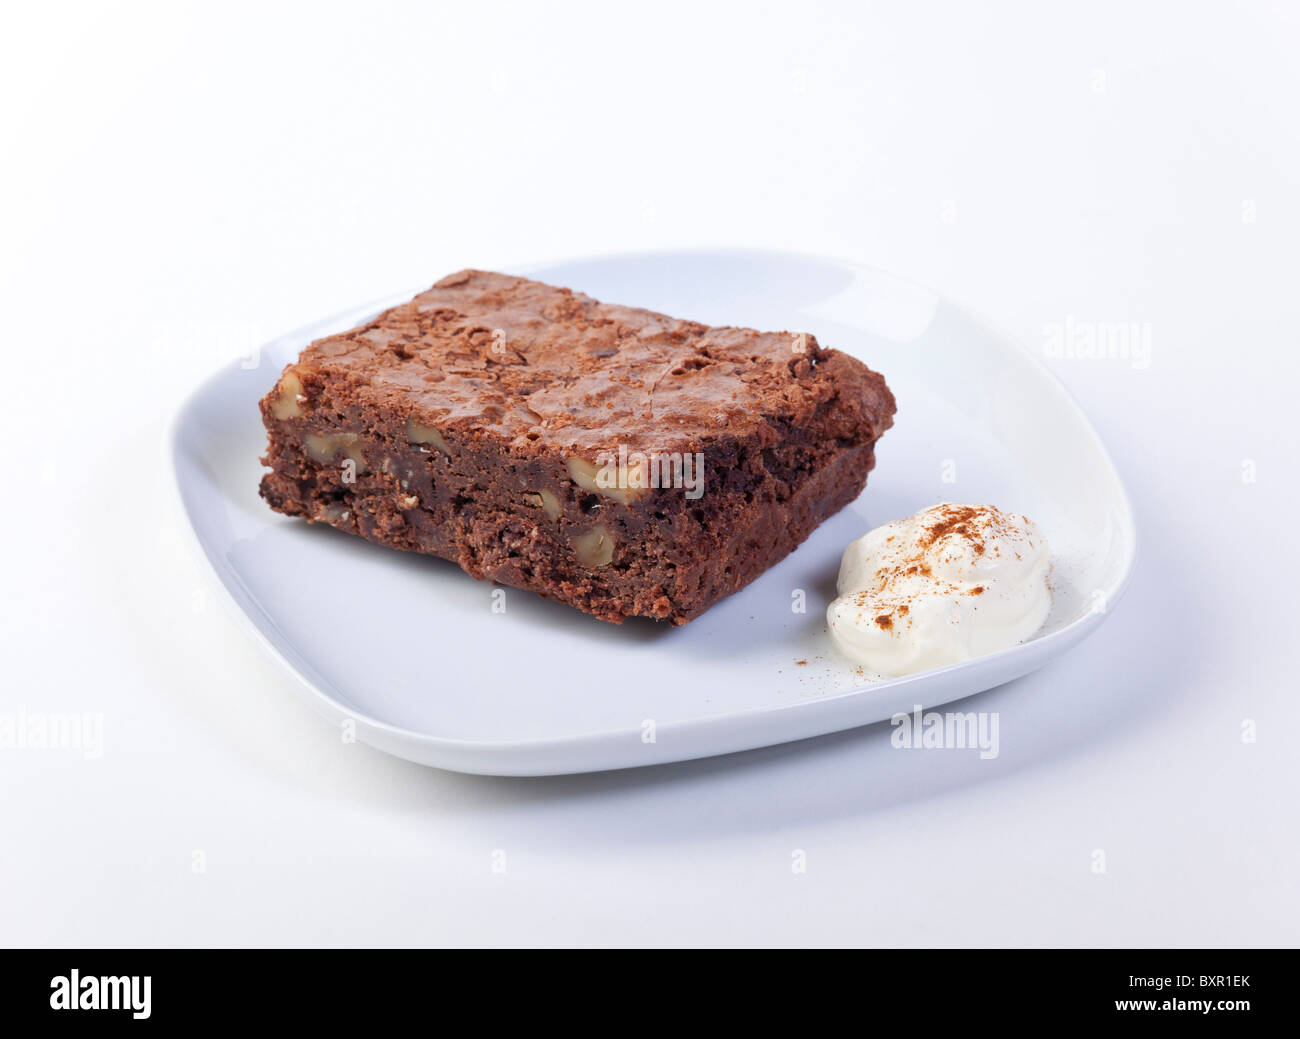 Pastel Brownie de chocolate servido en un plato con crema agria Foto de stock